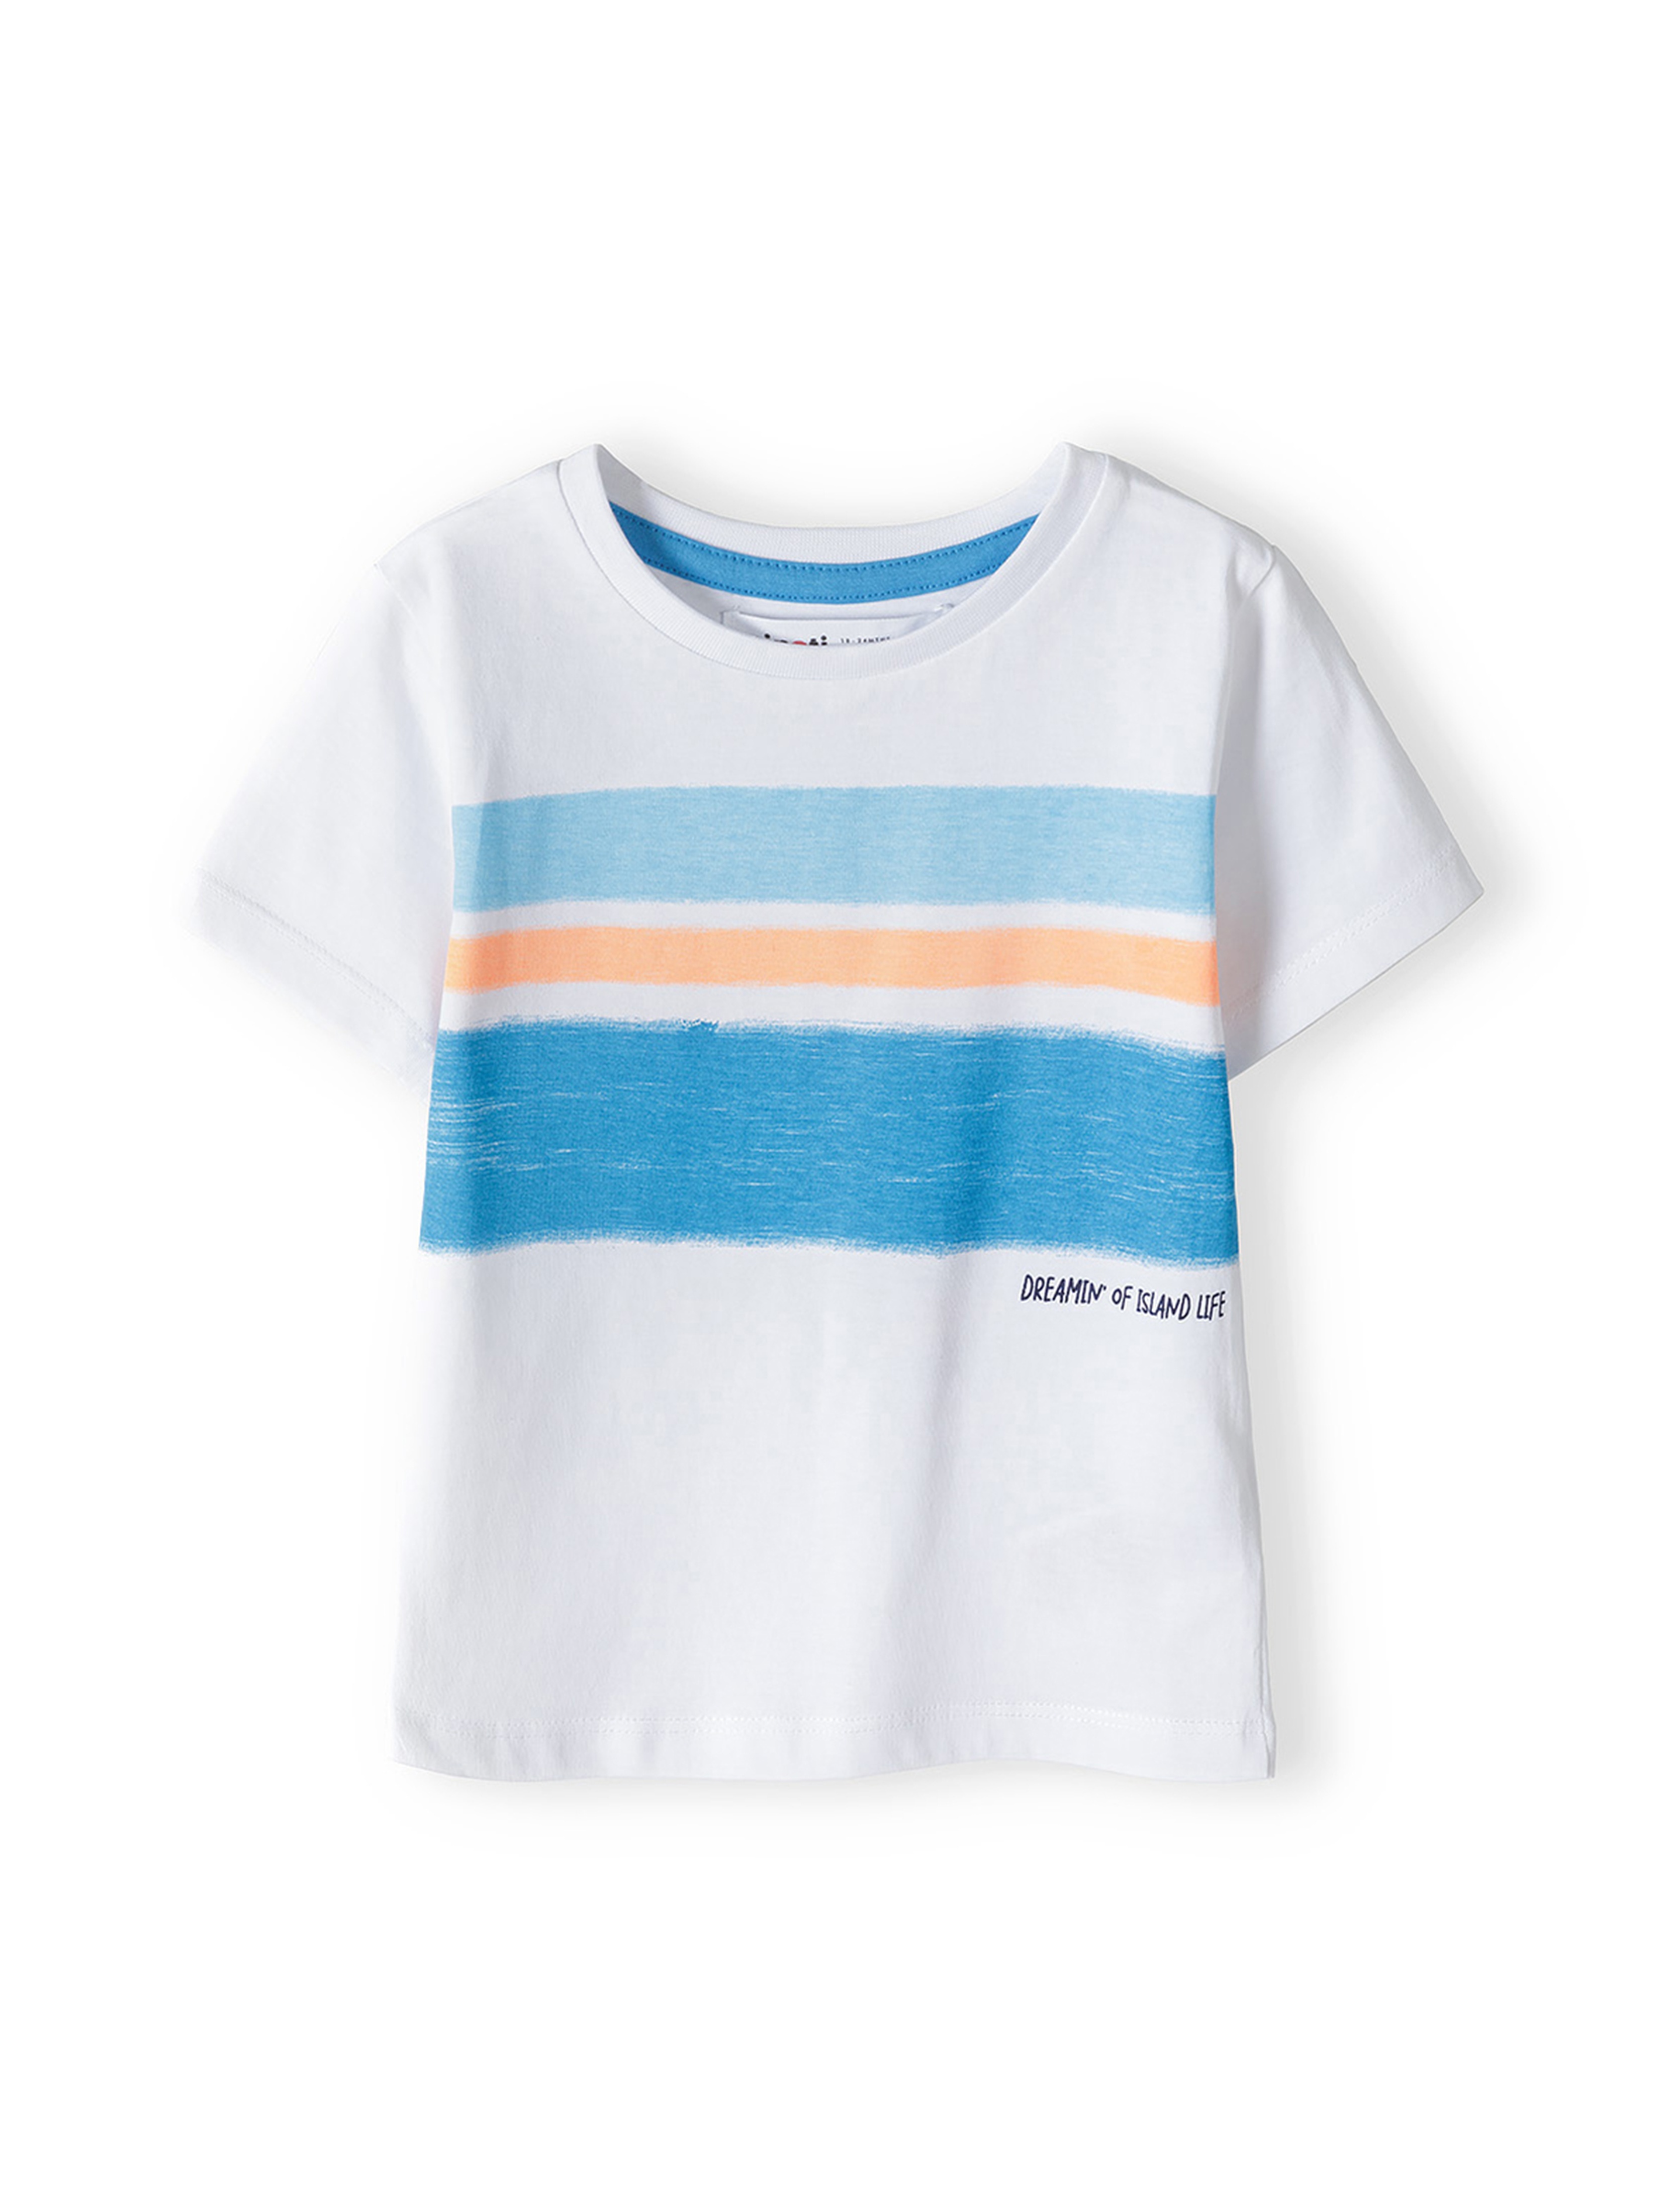 Komplet dla niemowlaka -biały t-shirt + niebieskie spodenki